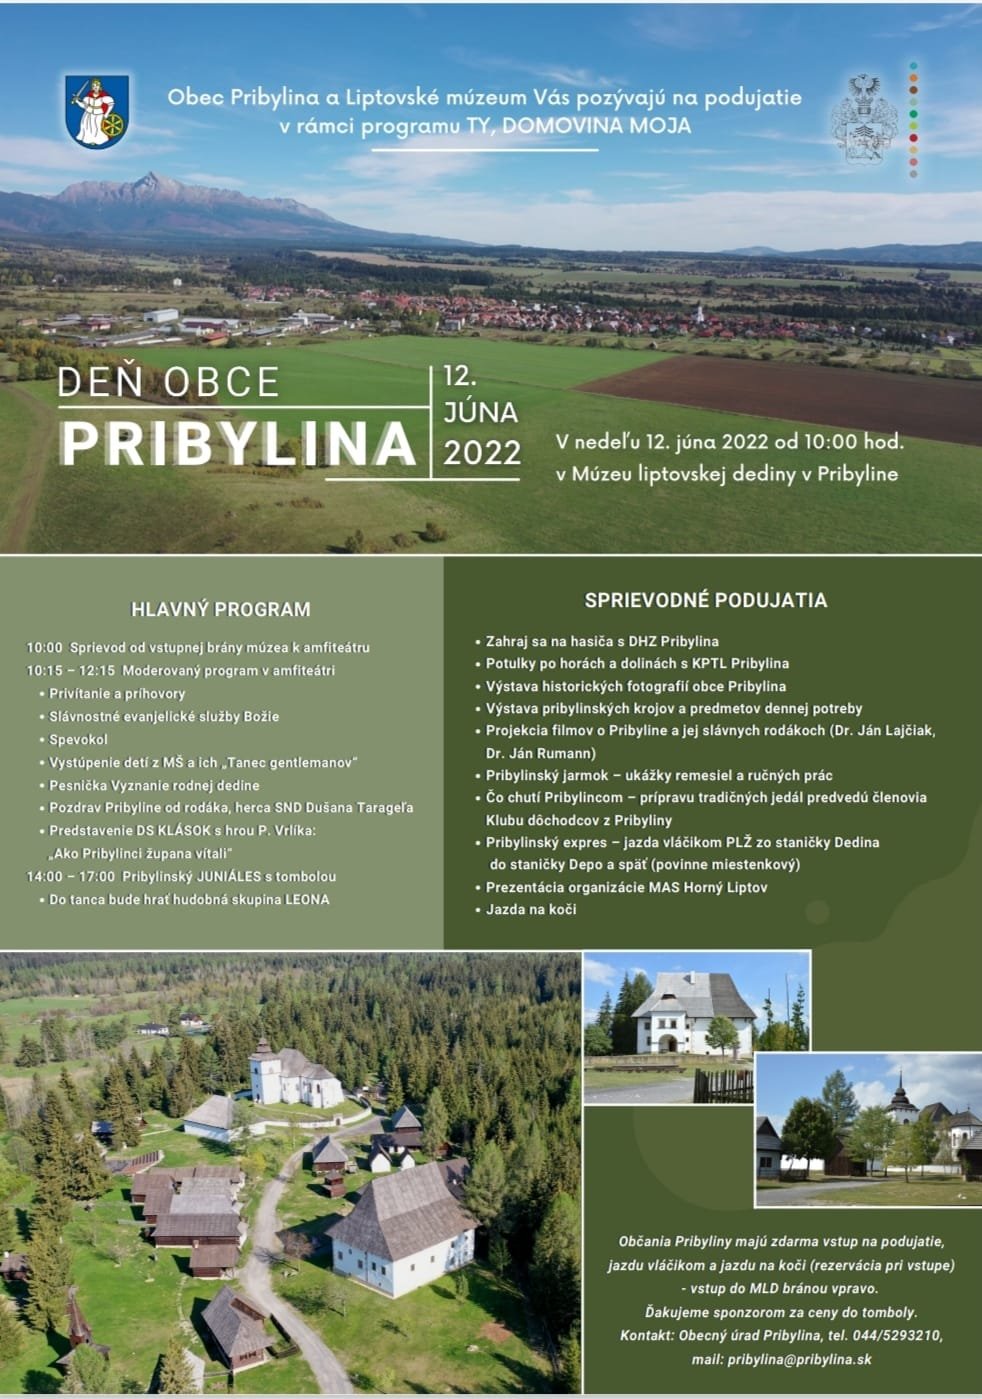 De obce Pribylina v Mzeu liptovskej dediny 2022